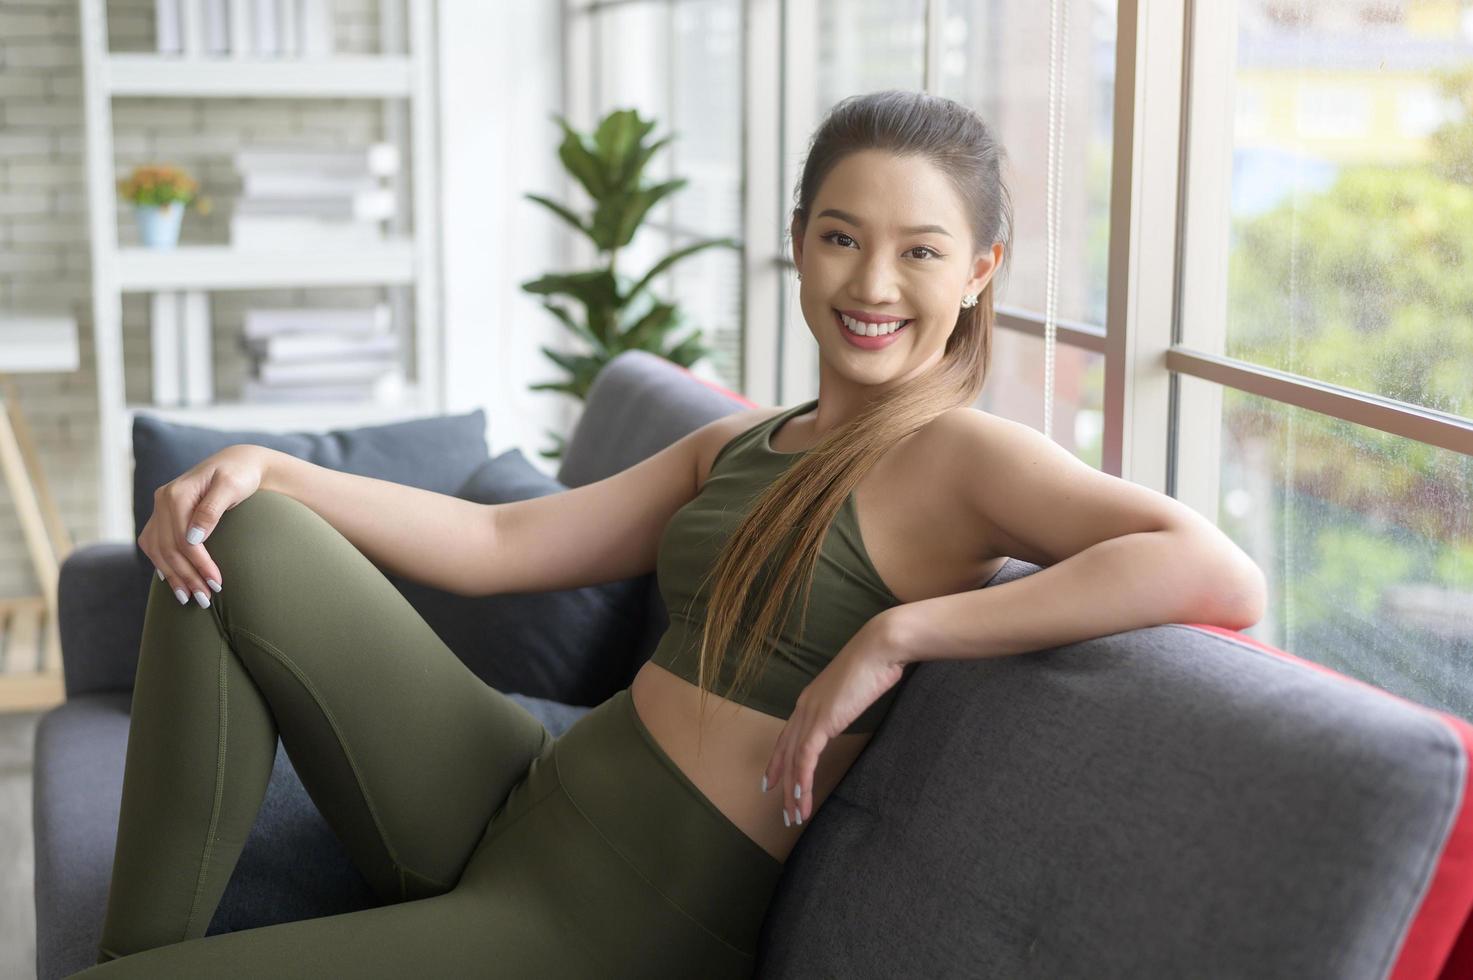 caber linda mulher asain em roupas esportivas sentada e relaxando no sofá após treino, saúde e conceito de exercício foto